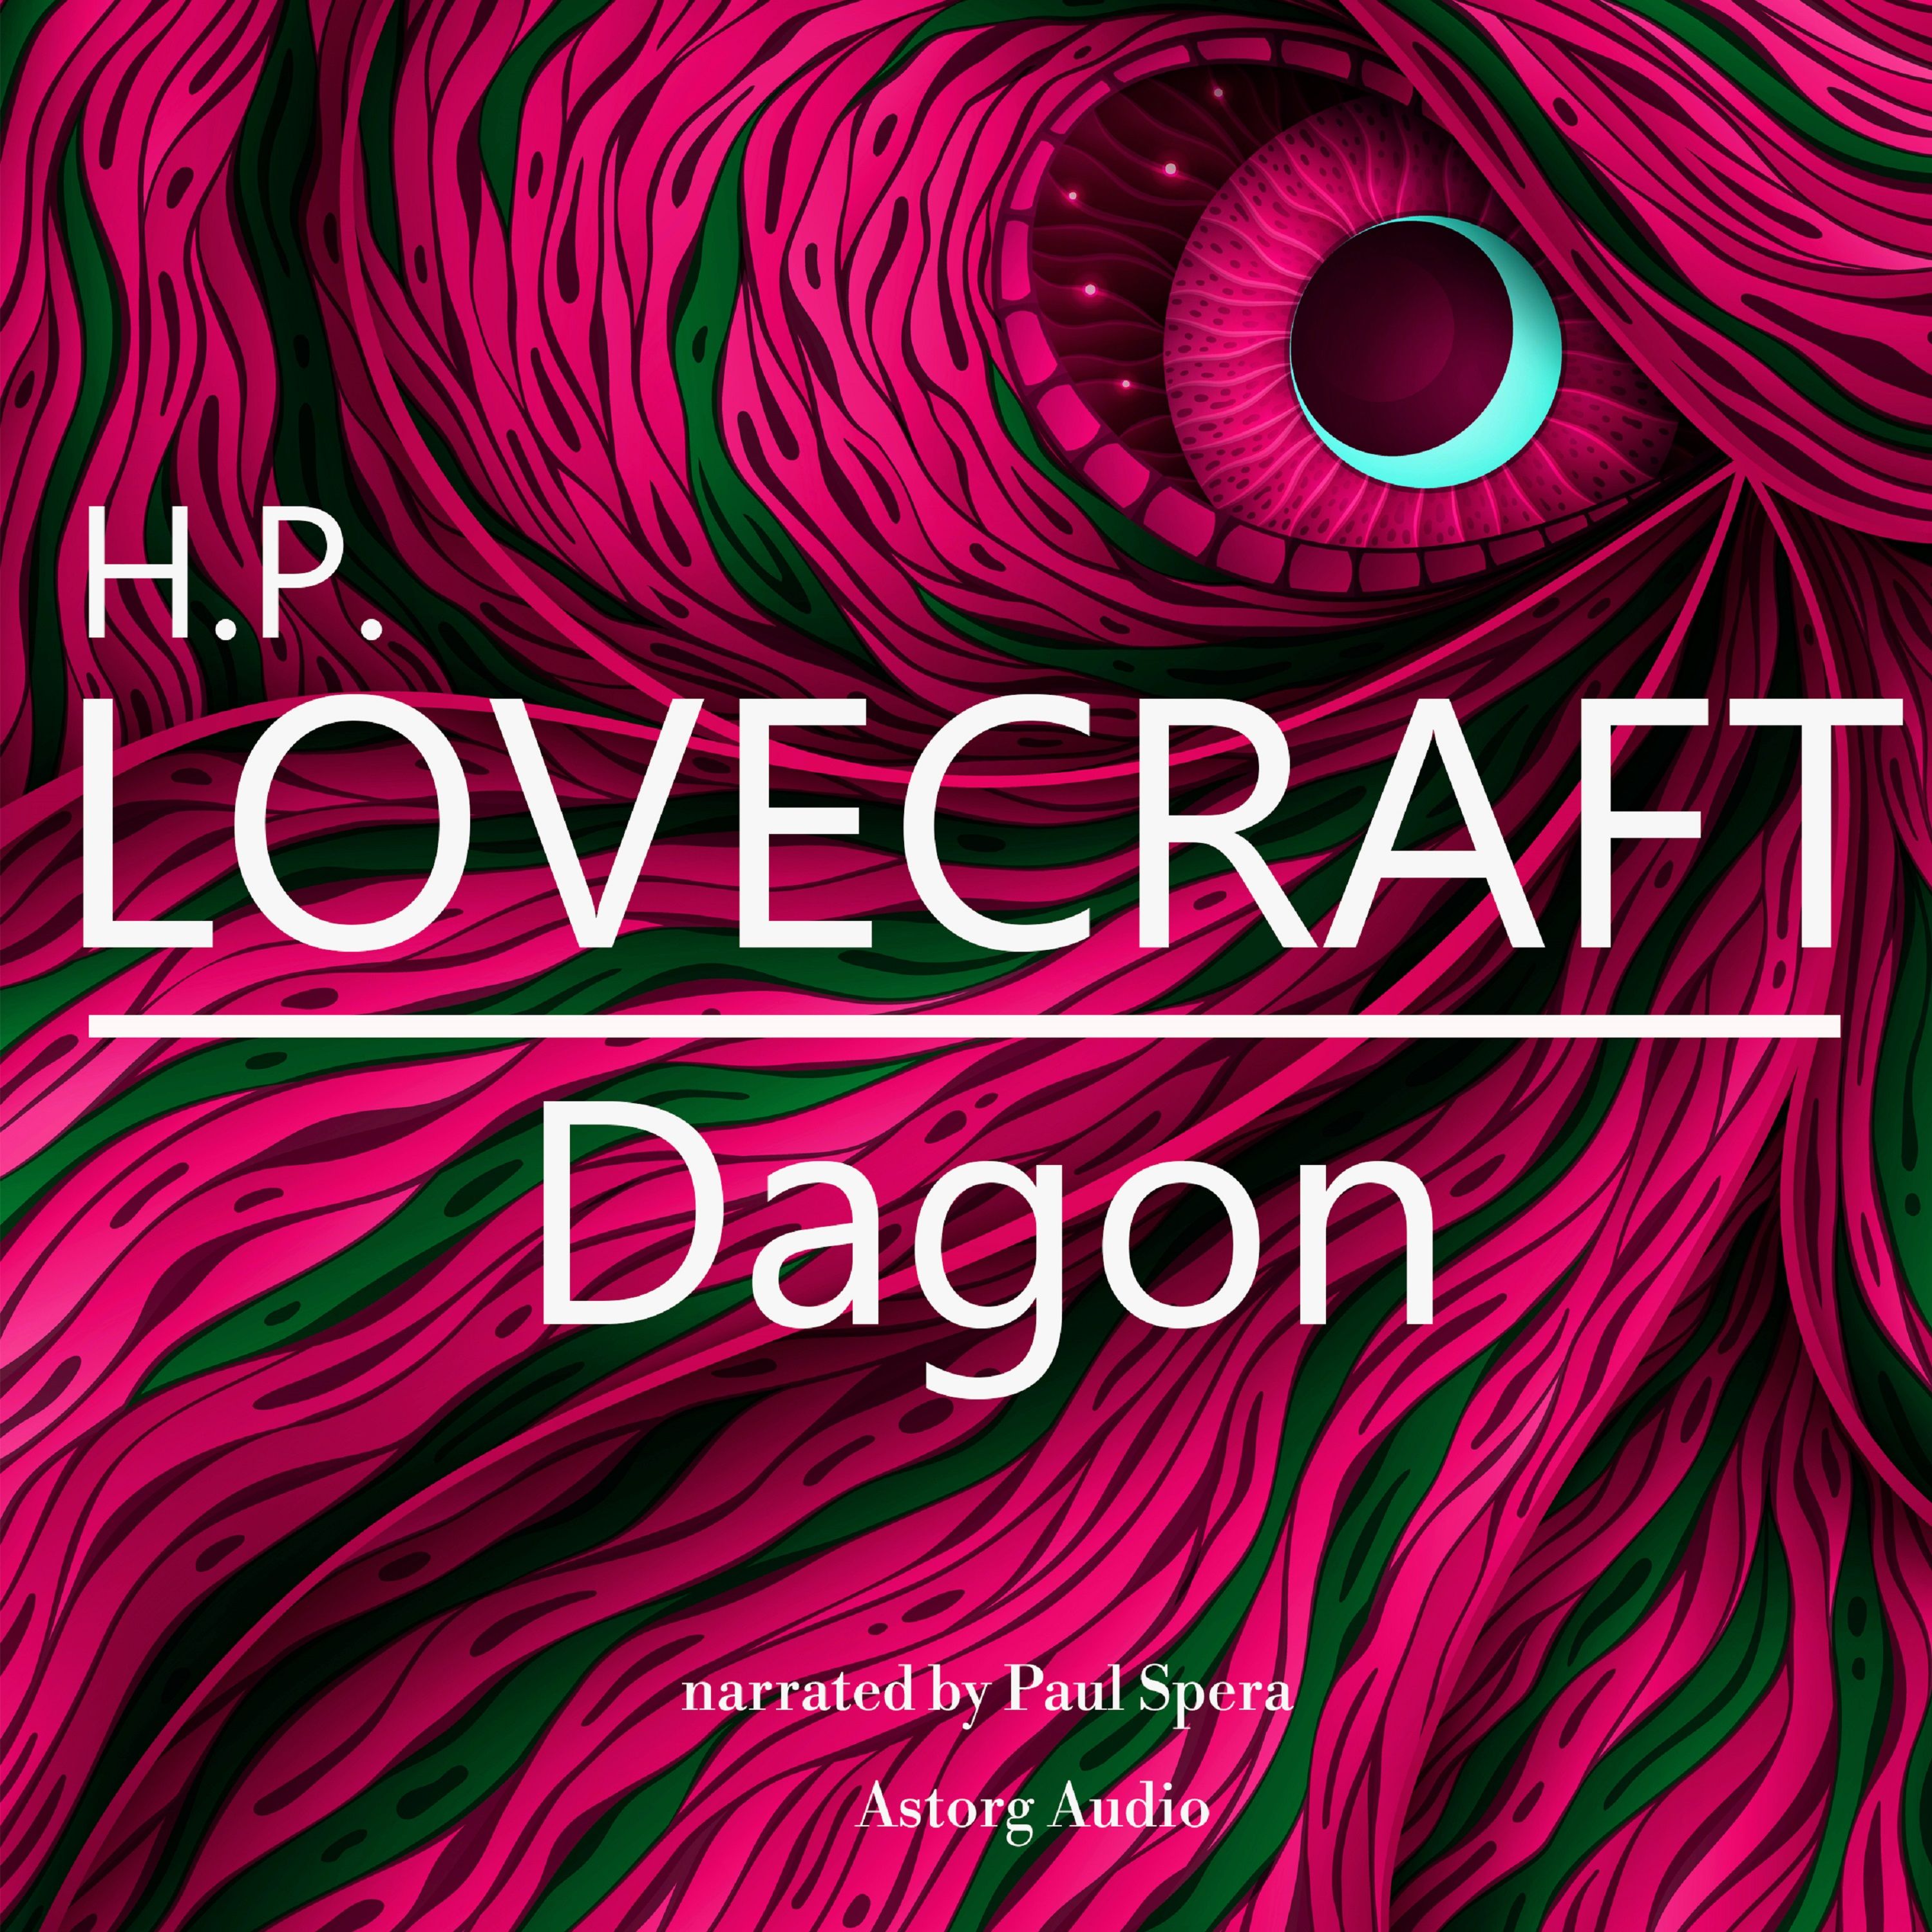 H. P. Lovecraft : Dagon, ljudbok av H. P. Lovecraft